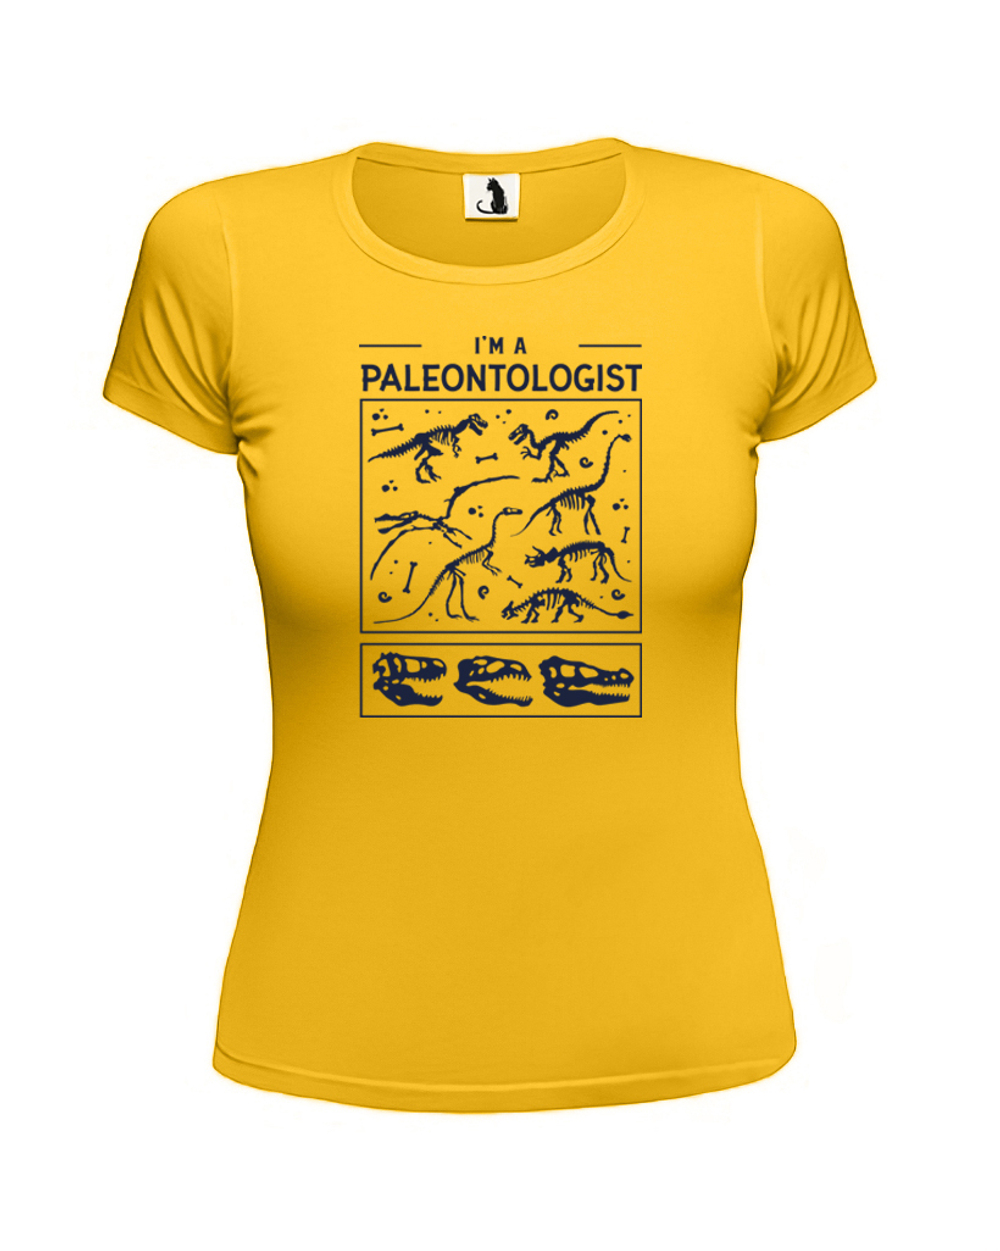 Футболка Я палеонтолог женская приталенная желтая с синим рисунком